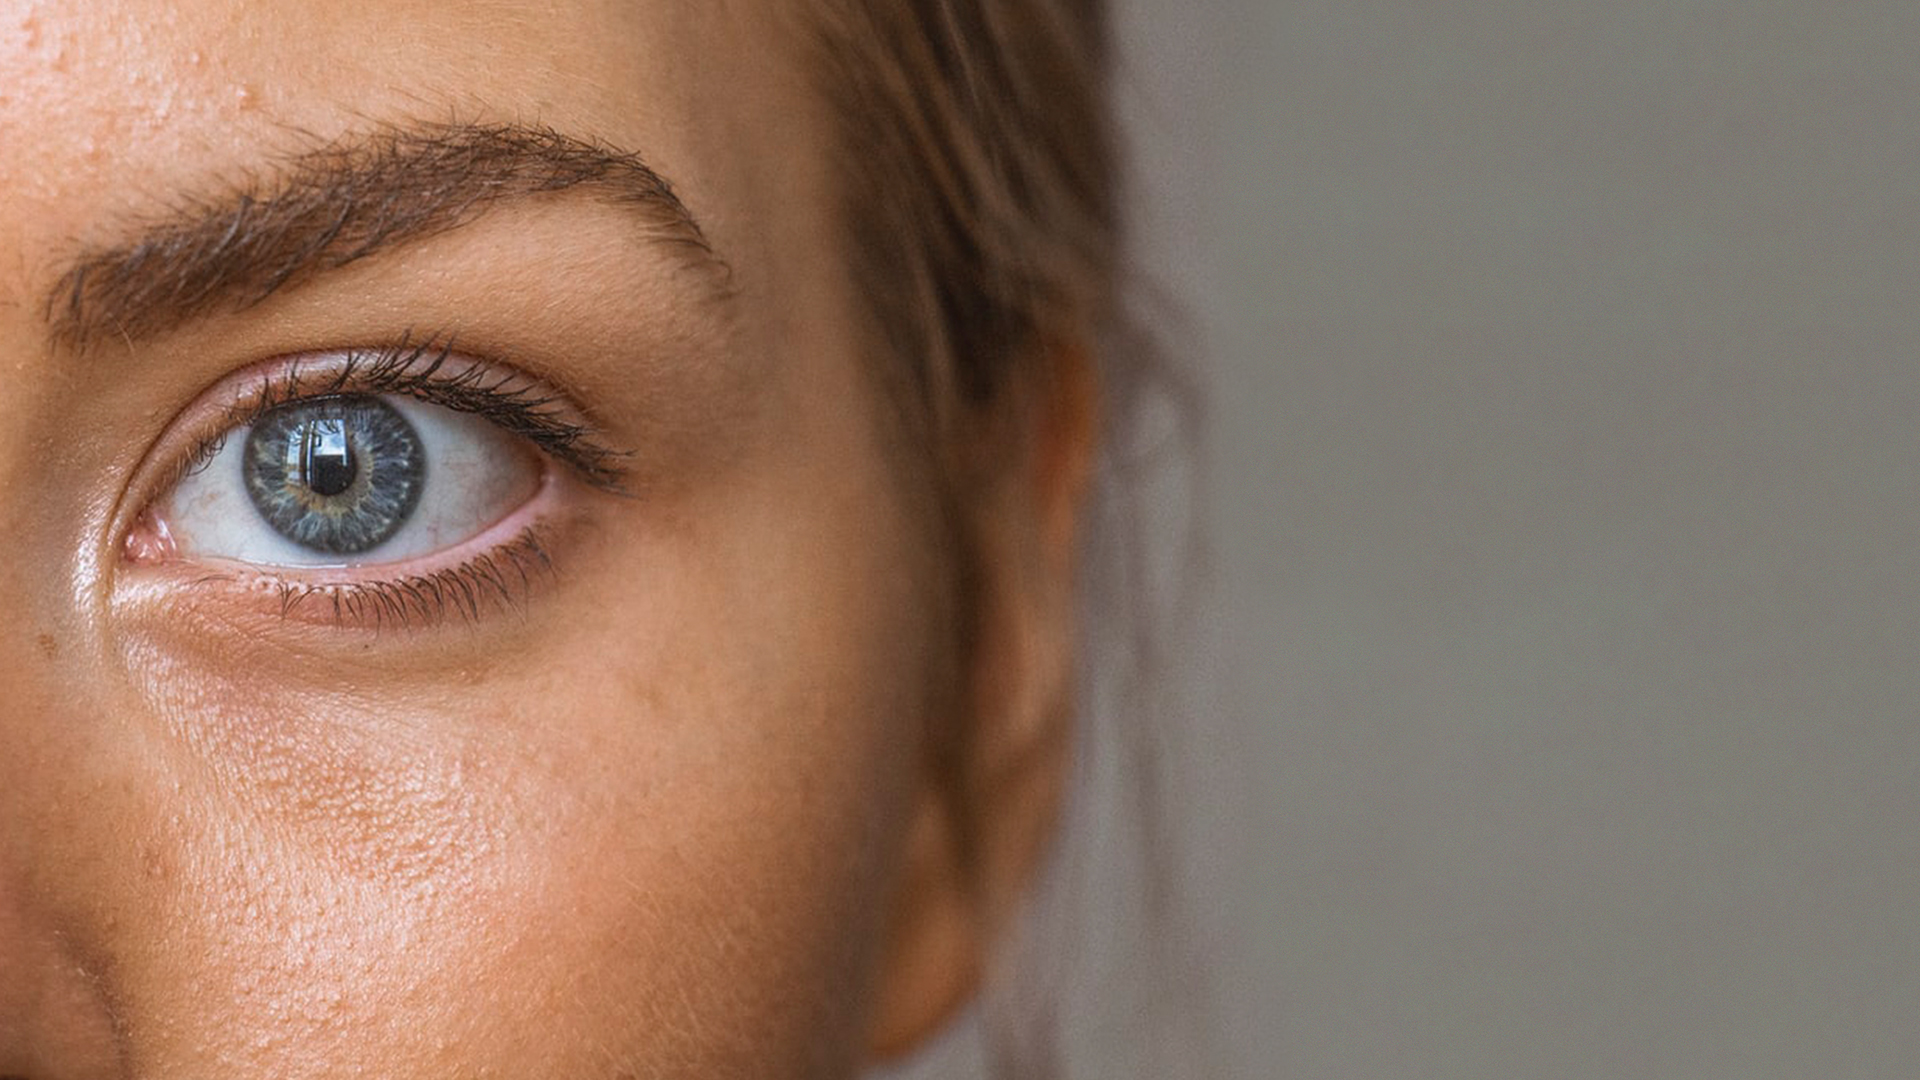 Sinis Geelachtig adelaar Acne behandeling: welke BIODERMA routine? | BIODERMA